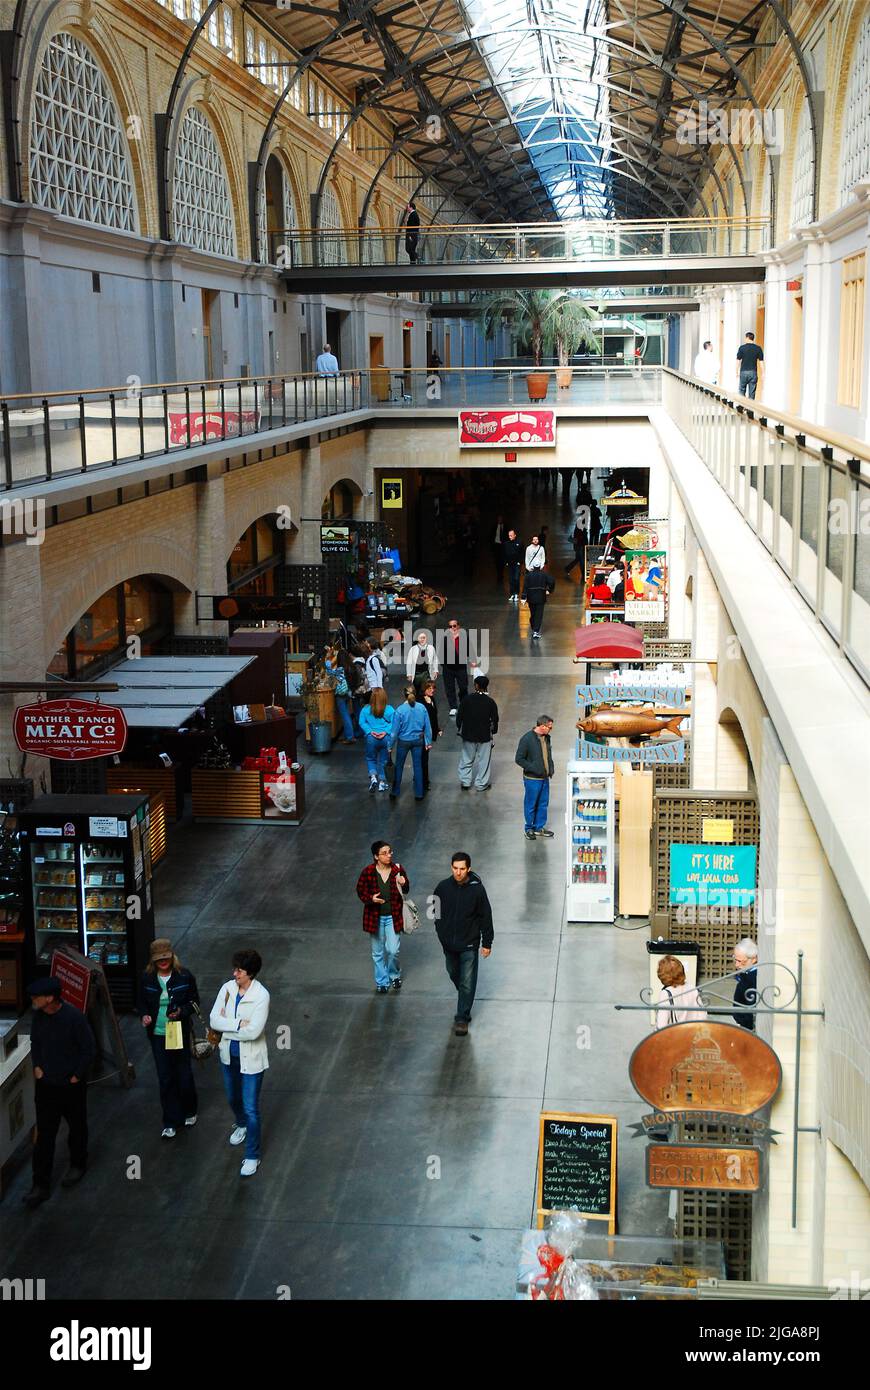 La gente camina alrededor del mercado, un centro comercial cubierto en el Ferry Building, San Francisco, California, que se especializa en alimentos orgánicos y frescos de granja Foto de stock